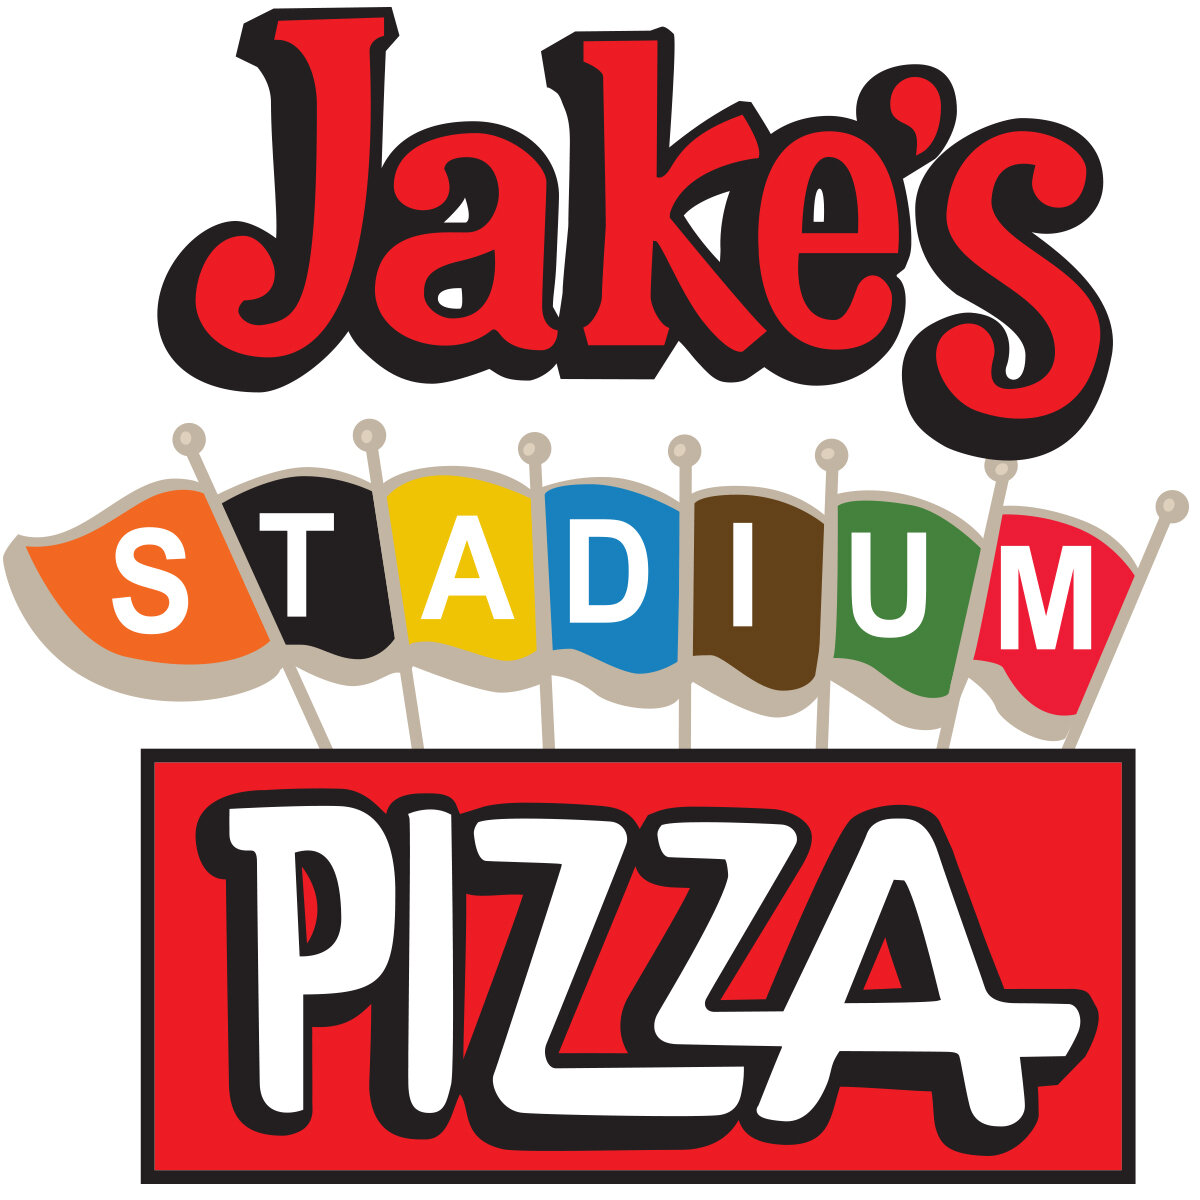 Jake's Stadium Pizza